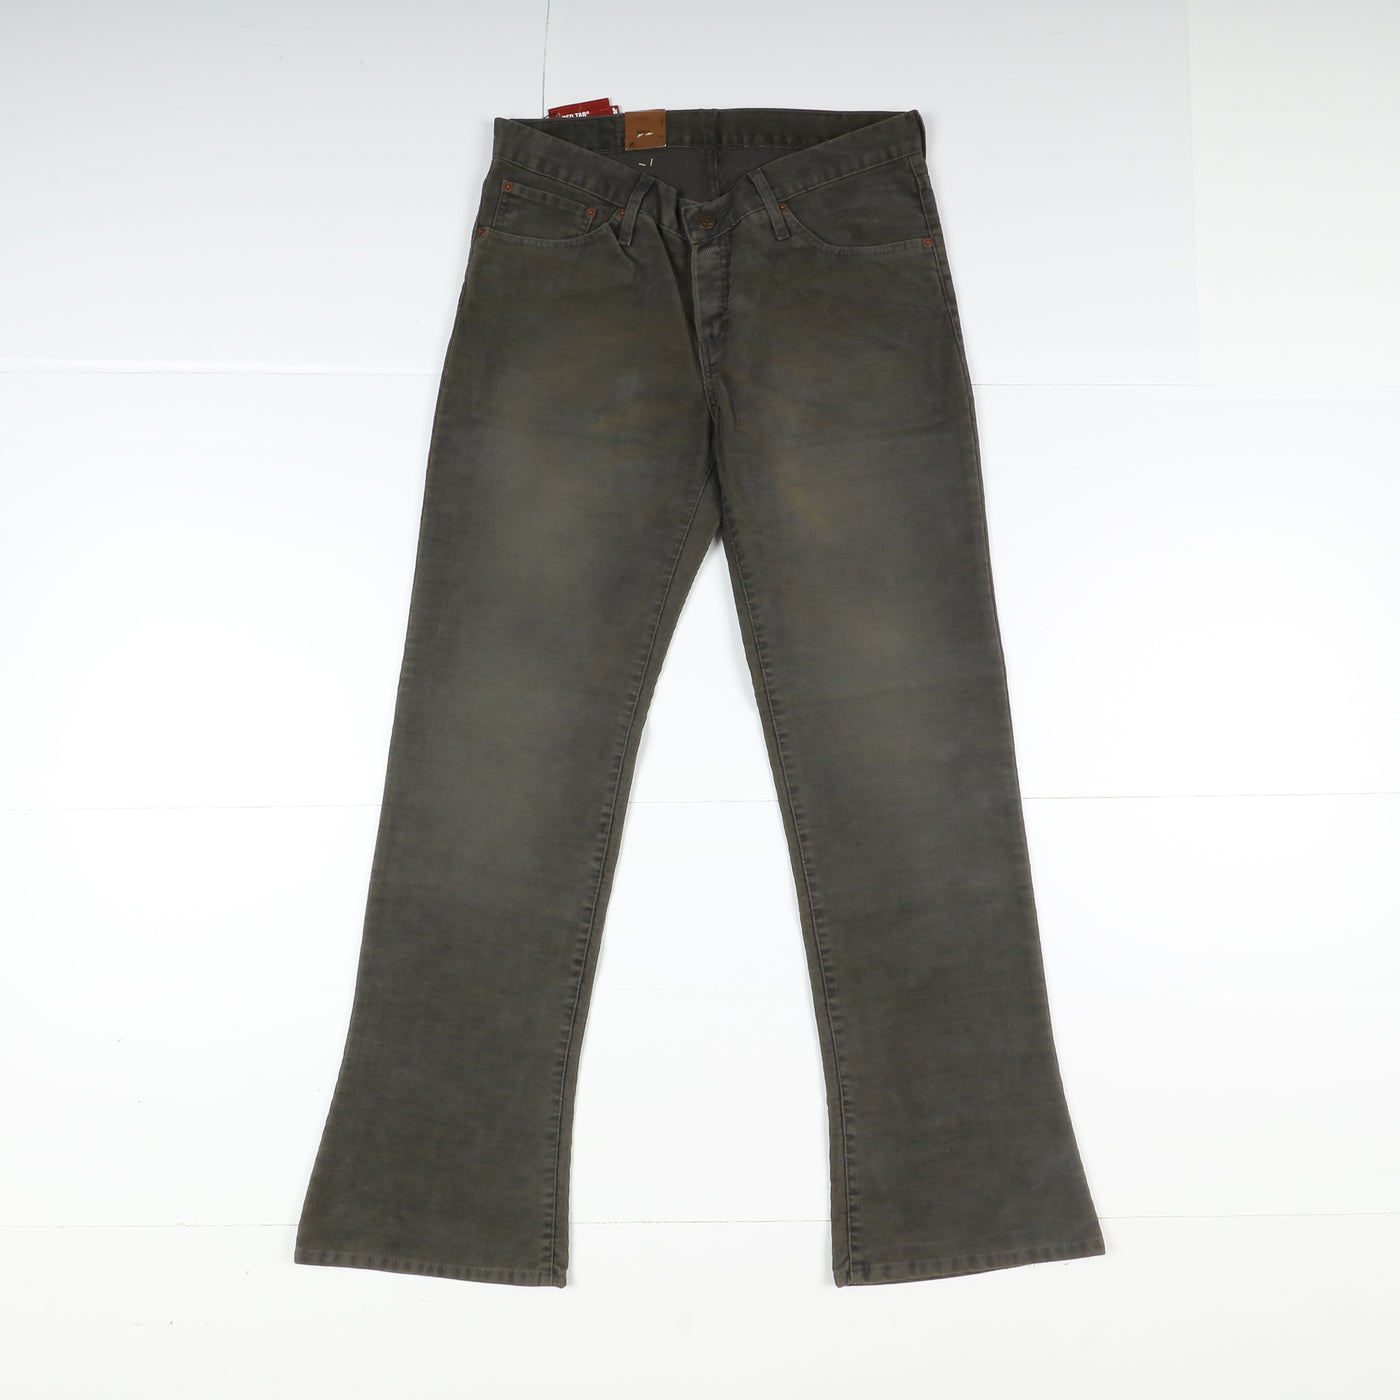 Levi's 518 Shoecut Low Rise Bootcut Jeans W34 L34 Verde Unisex Vita Bassa Dead Stock W/Tags